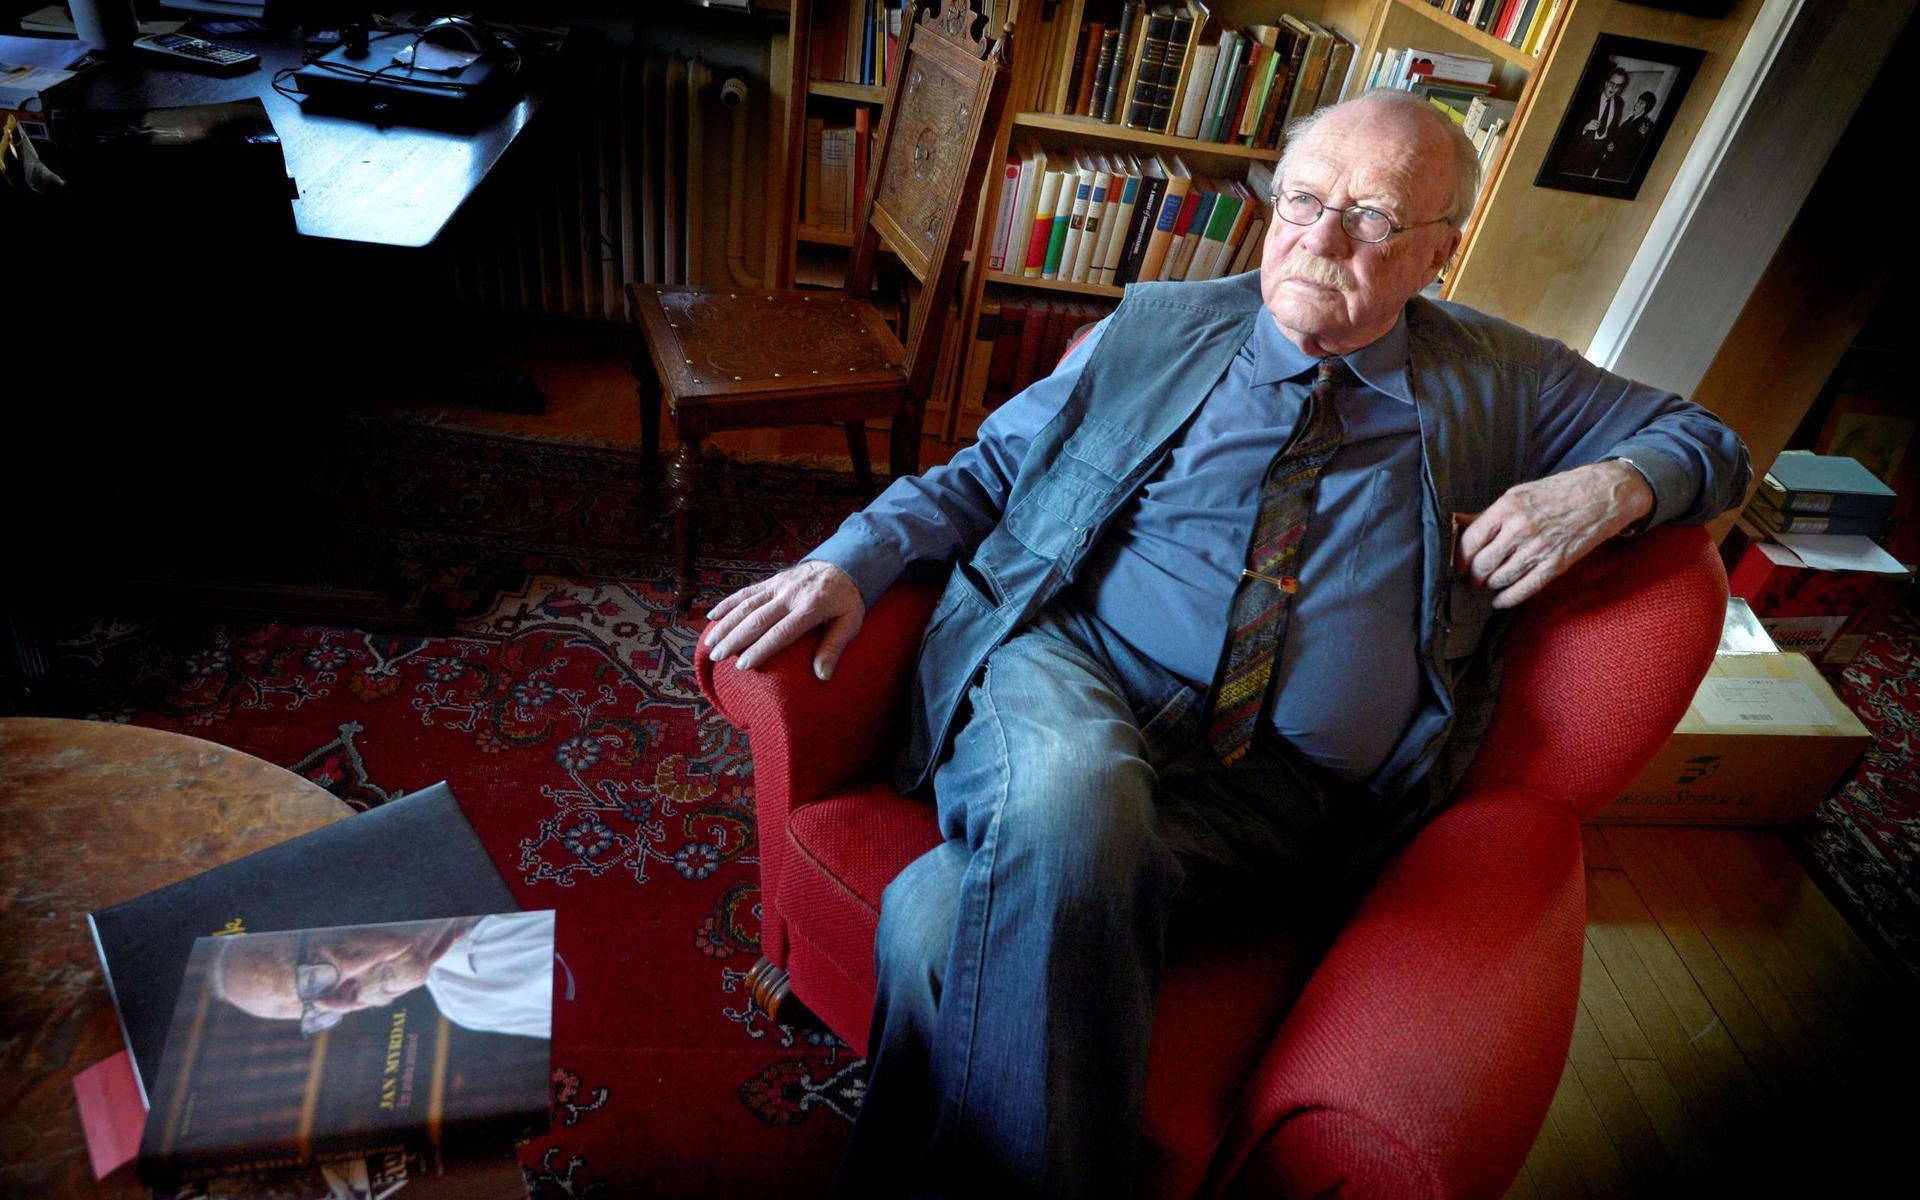 Jan Myrdals sista bok blev ”Ett andra anstånd&quot; 2019. Han avled 93 år gammal i oktober 2020.